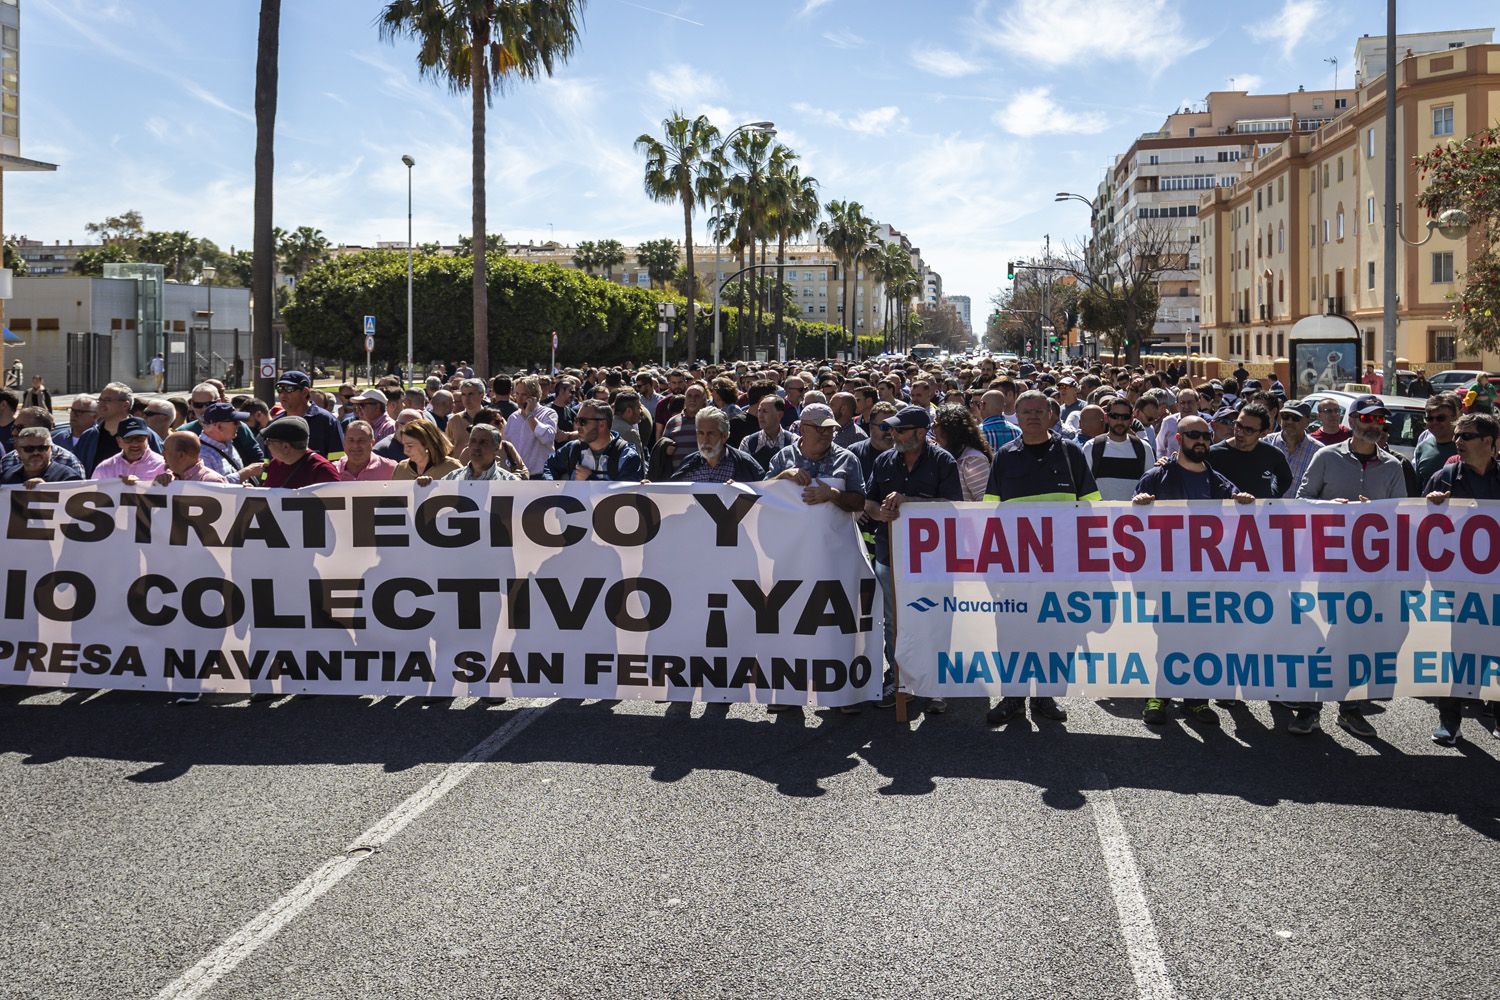 Protesta de Navantia-Bahía de Cádiz por el plan estratégico y el convenio colectivo, en una imagen reciente.